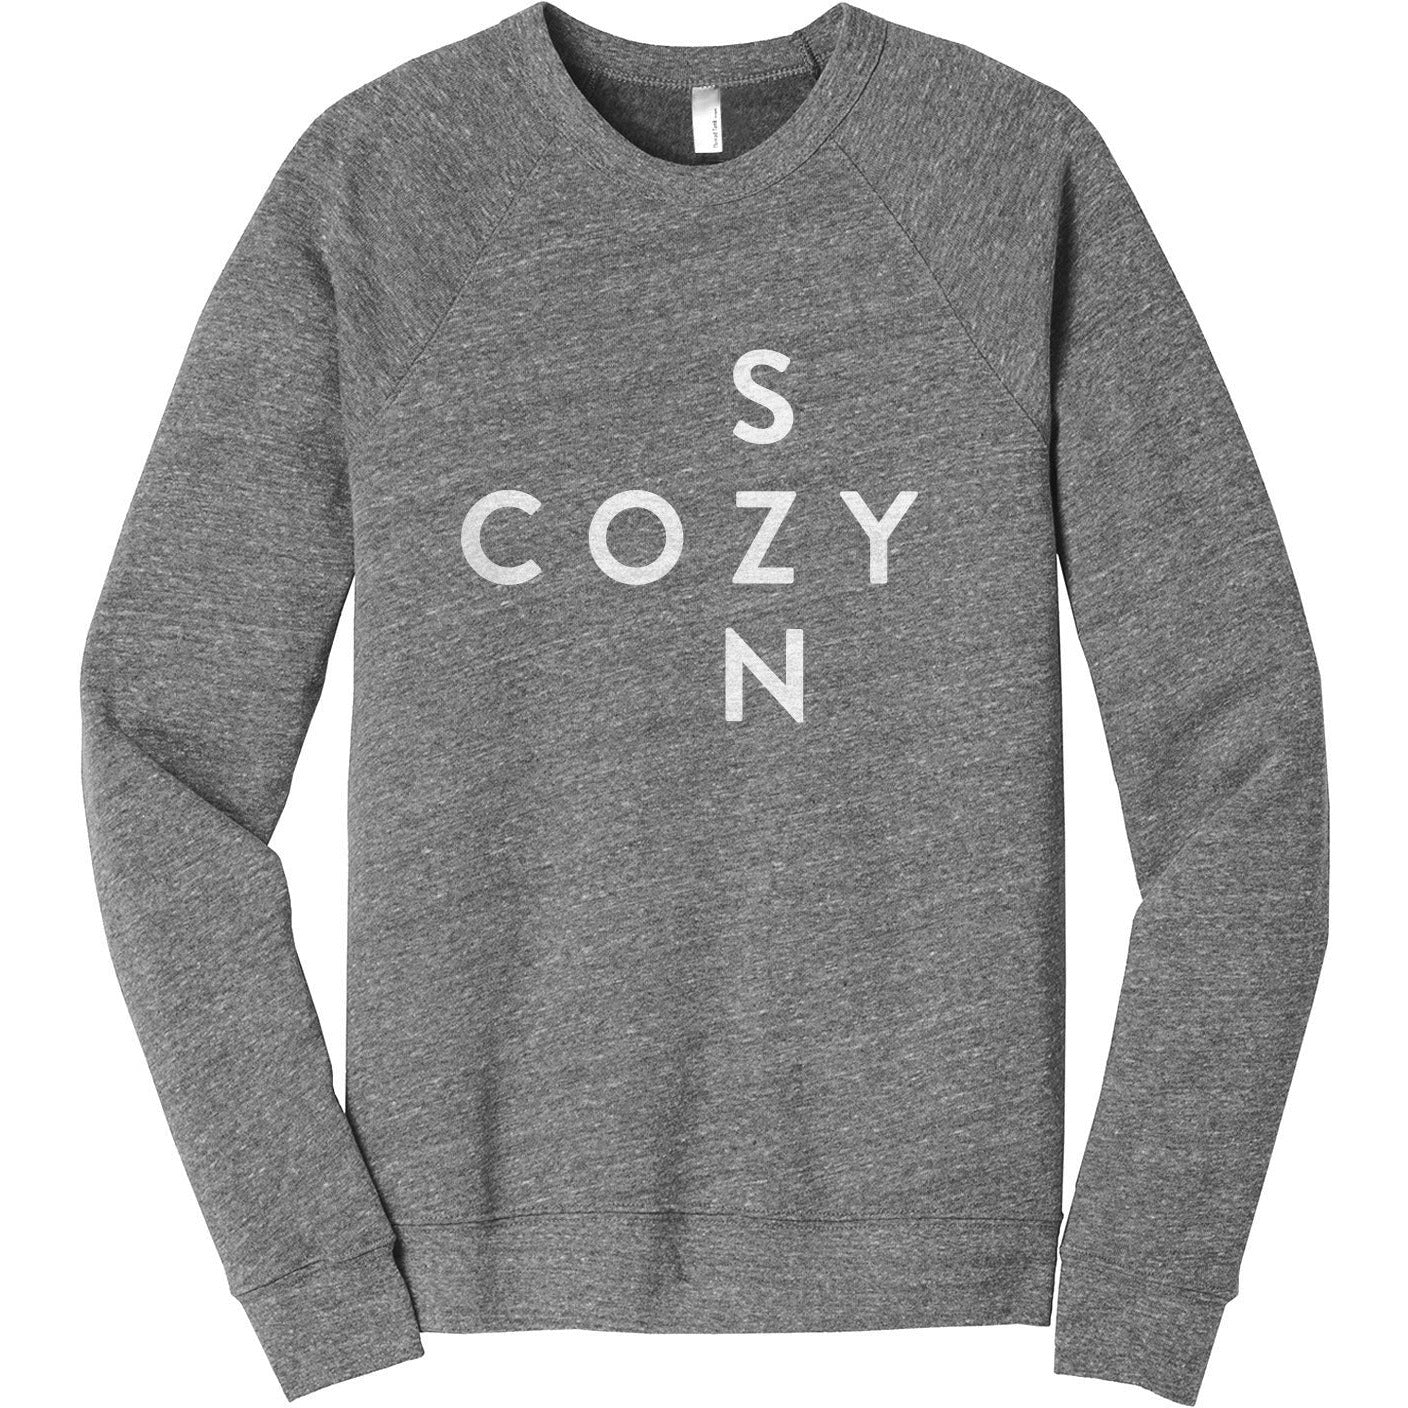 Cozy Season Women's Cozy Fleece Longsleeves Sweater Rouge Closeup Details